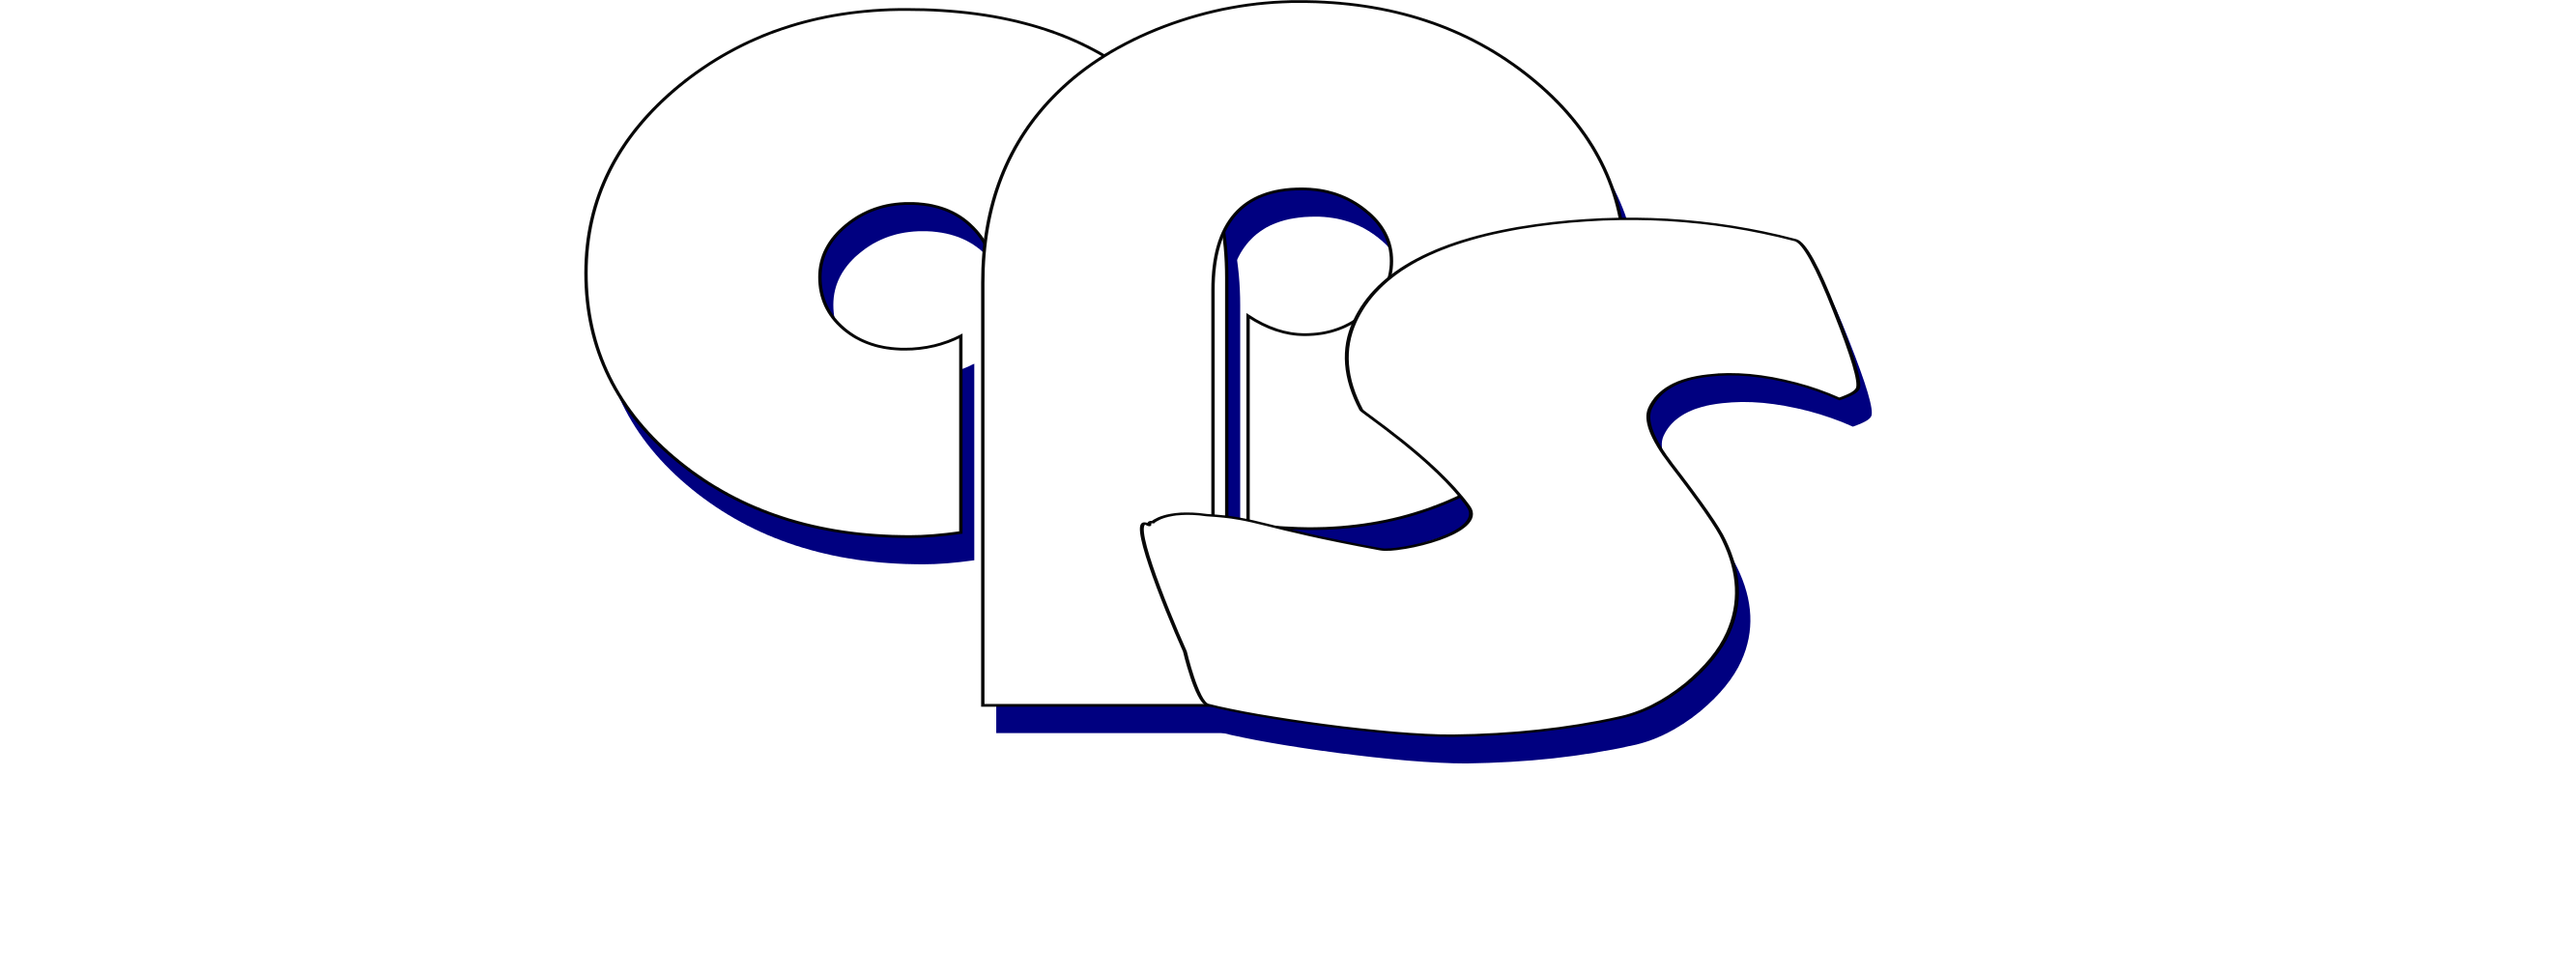 Arise Primecare Services